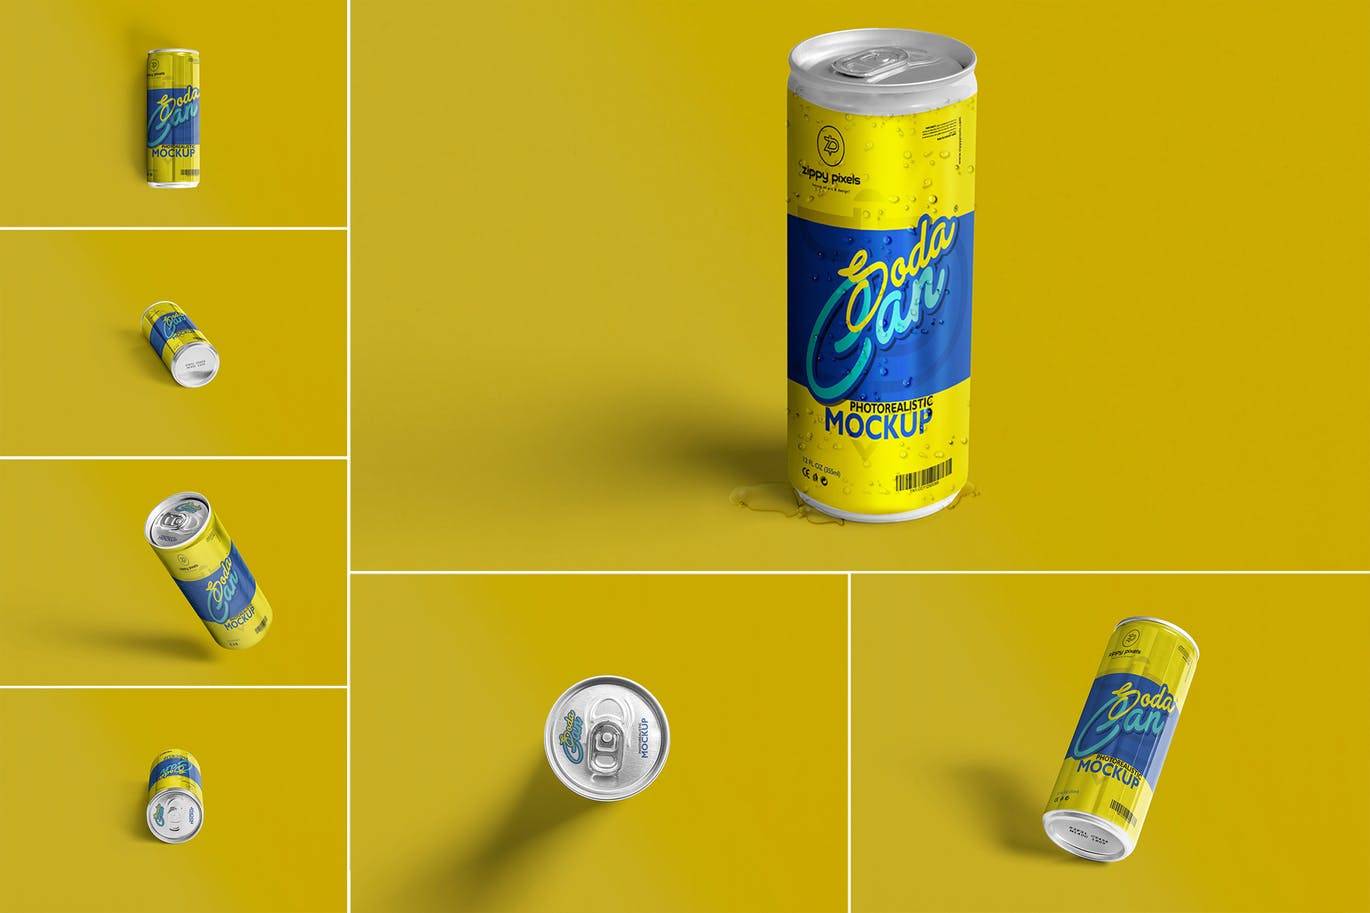 6200 冰冻的凉可乐芬达雪碧易拉罐包装样机模型-soda-can-mockup-3500x2300px-v2